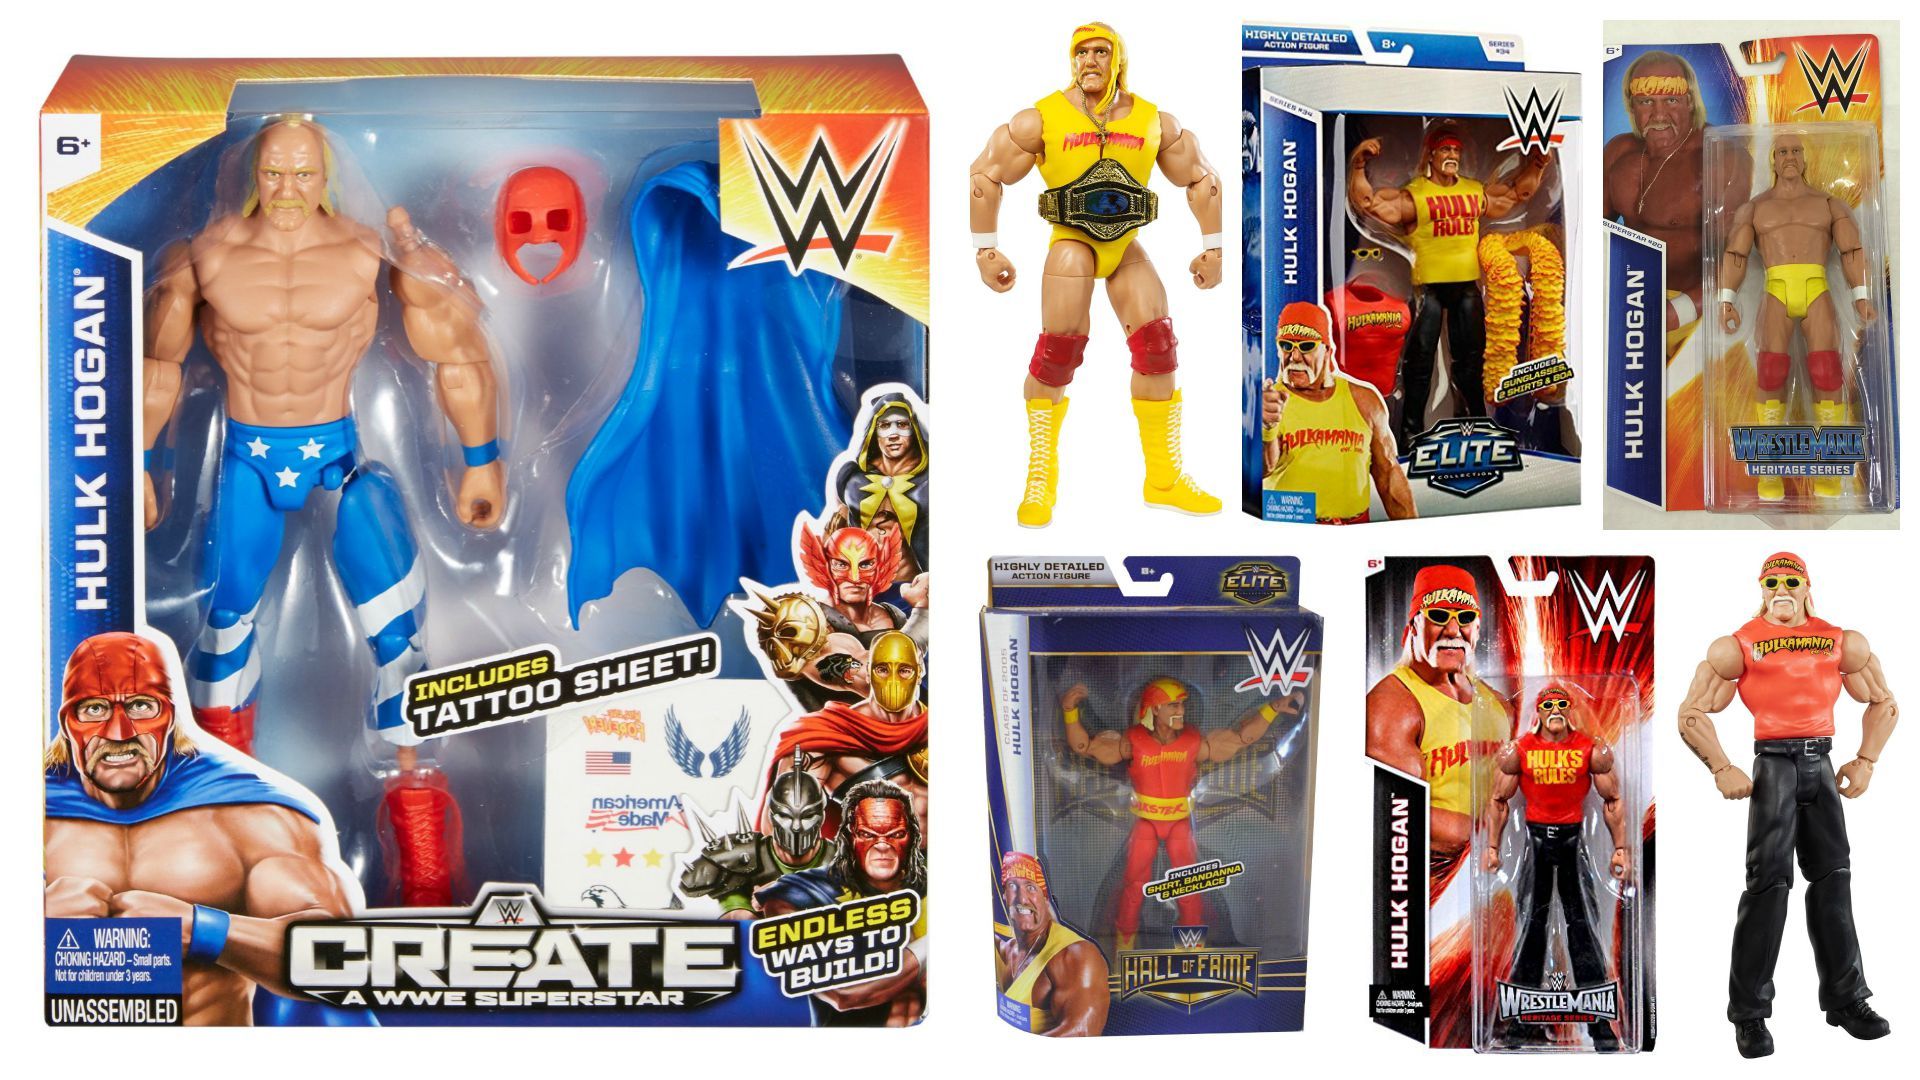 Mattel Wwe Hulk Hogan Figures Still In Stores - Hulk Hogan Mattel Figure , HD Wallpaper & Backgrounds